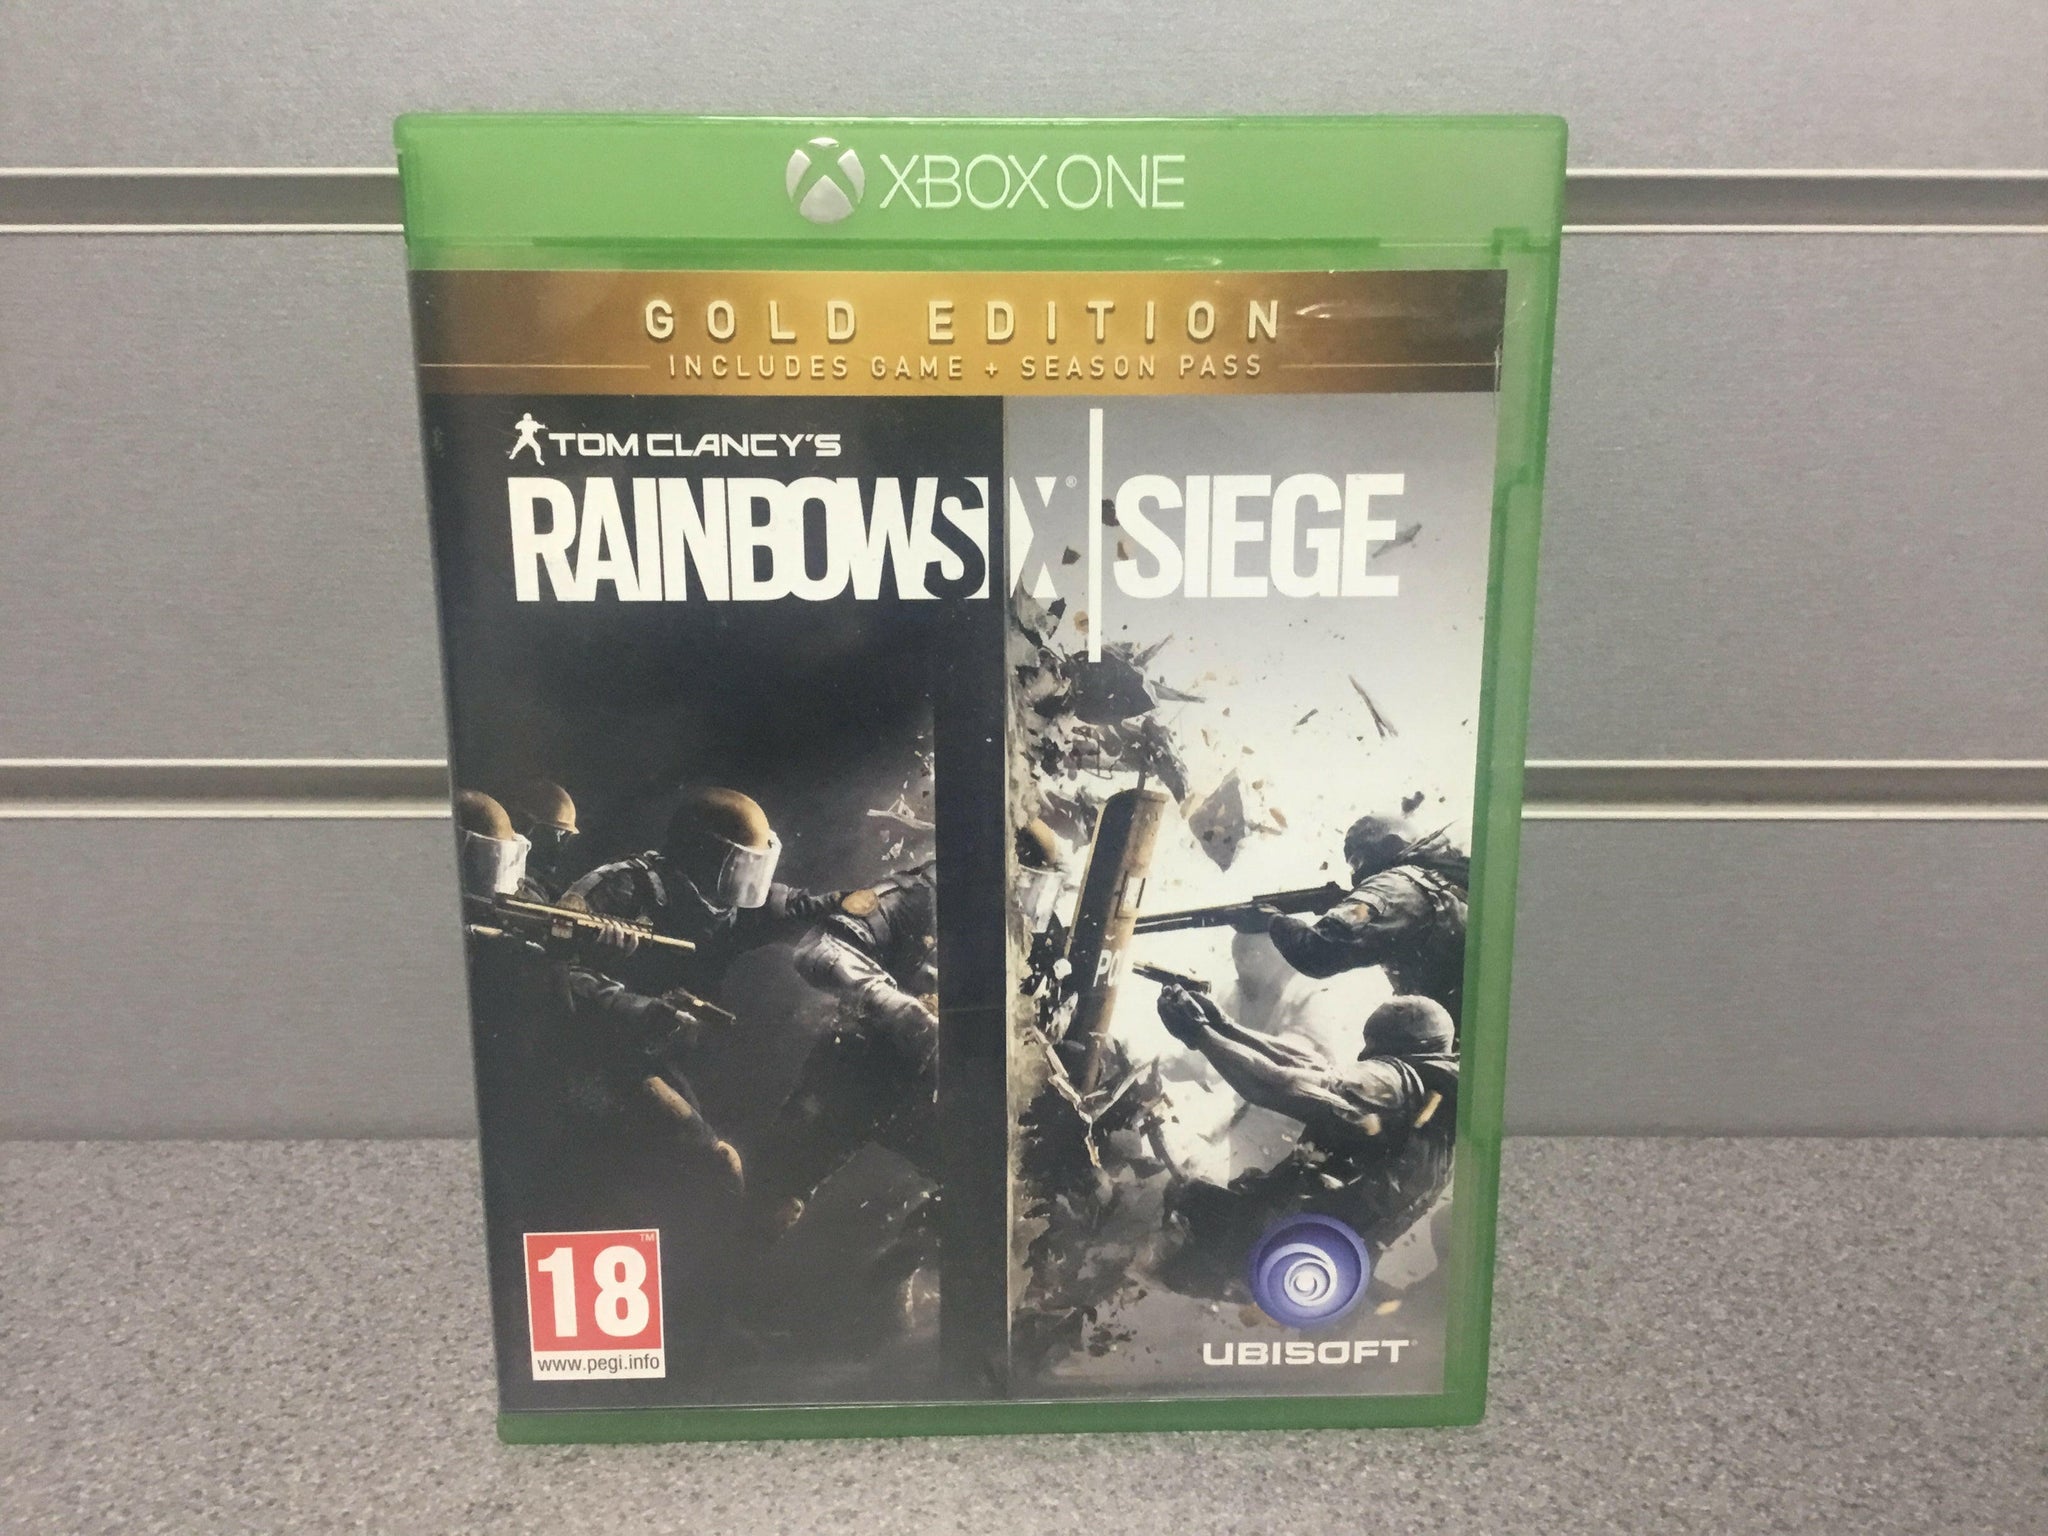 Tom Clancy's Rainbow Six Siege [X1 Game]